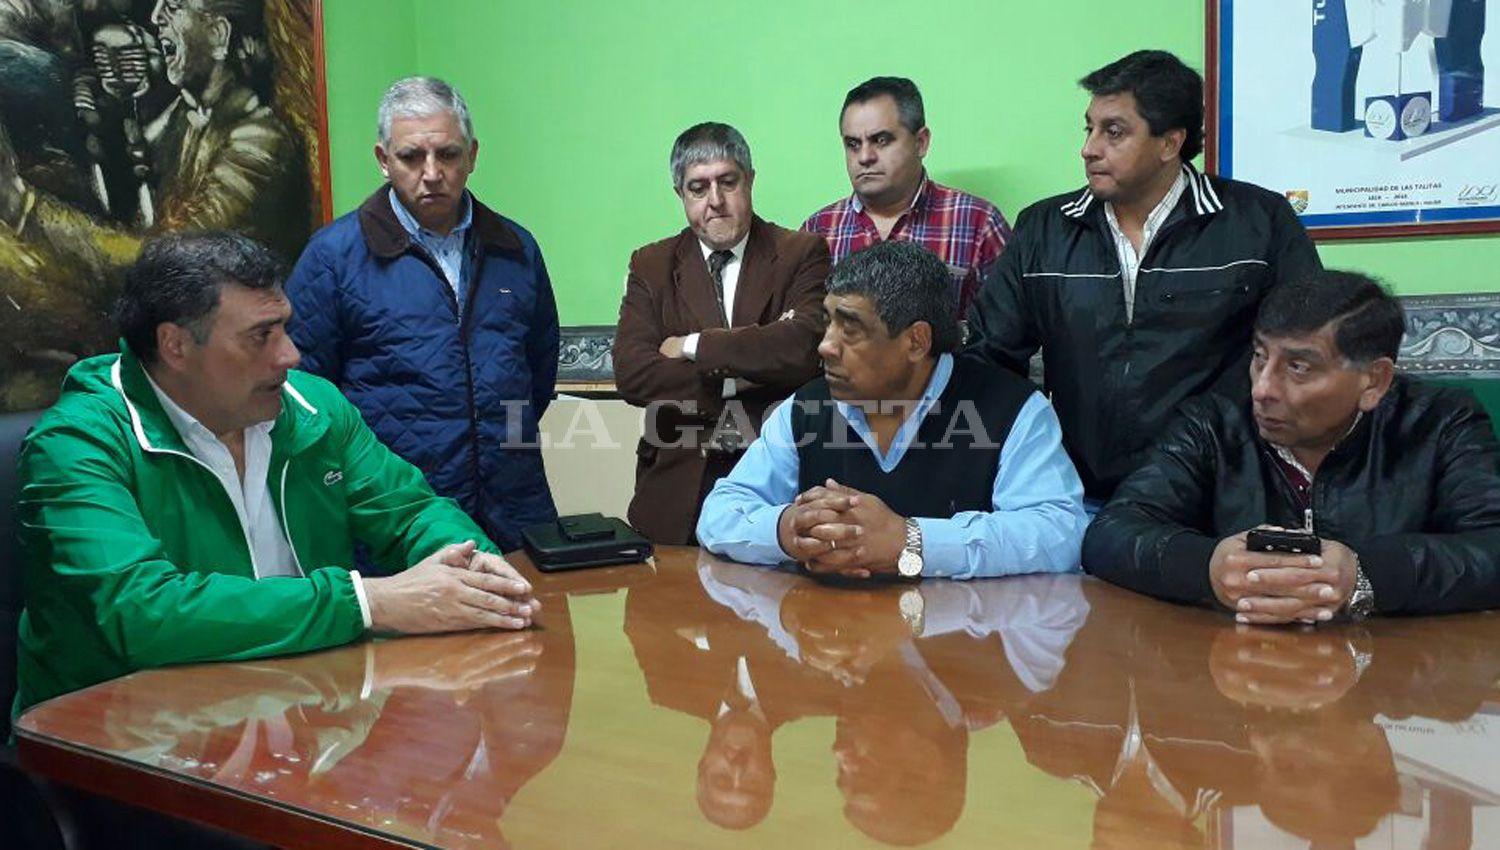 MESA DE DIALOGO. Najar (verde) y González (de chaleco) mantuvieron un encuentro en la sede municipal. LA GACETA / FOTO DE ANALÍA JARAMILLO